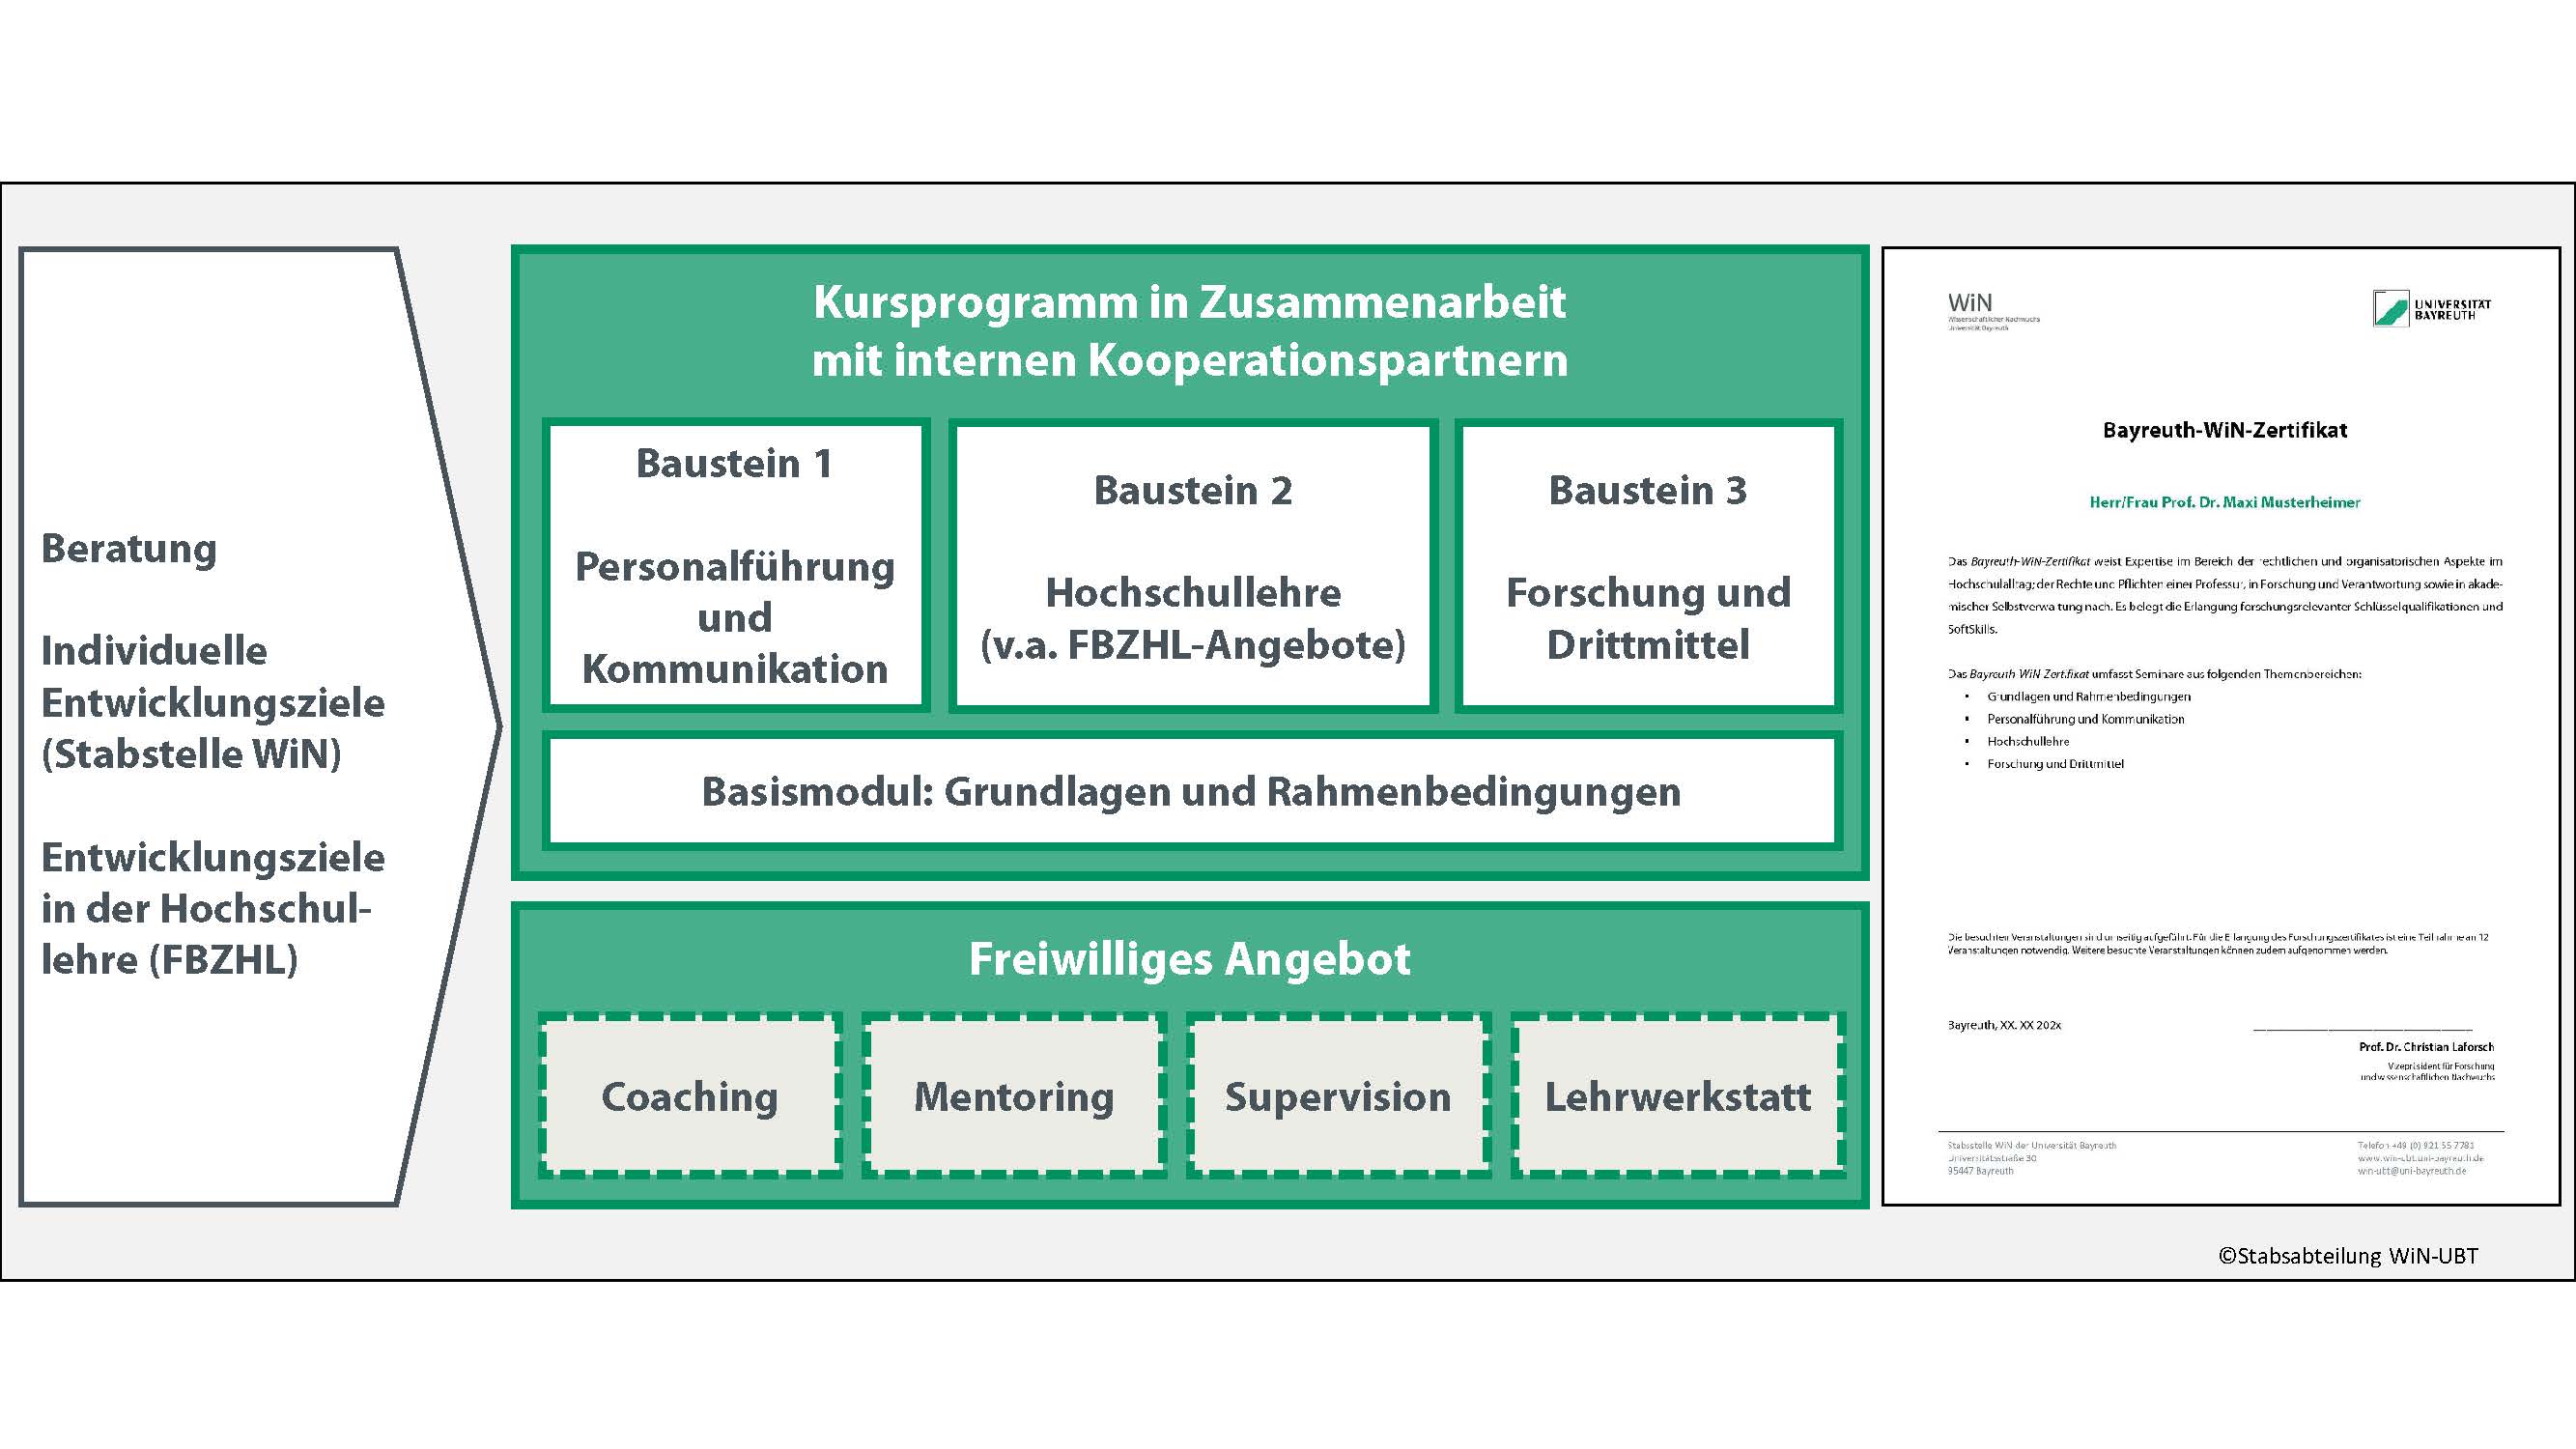 Begleitung des Karriereweges von W1 nach W3 (Tenure Track) mit der Erlangung des Bayreuth-WiN-Zertifikates und der Struktur des Weiterbildungsprogrammes..